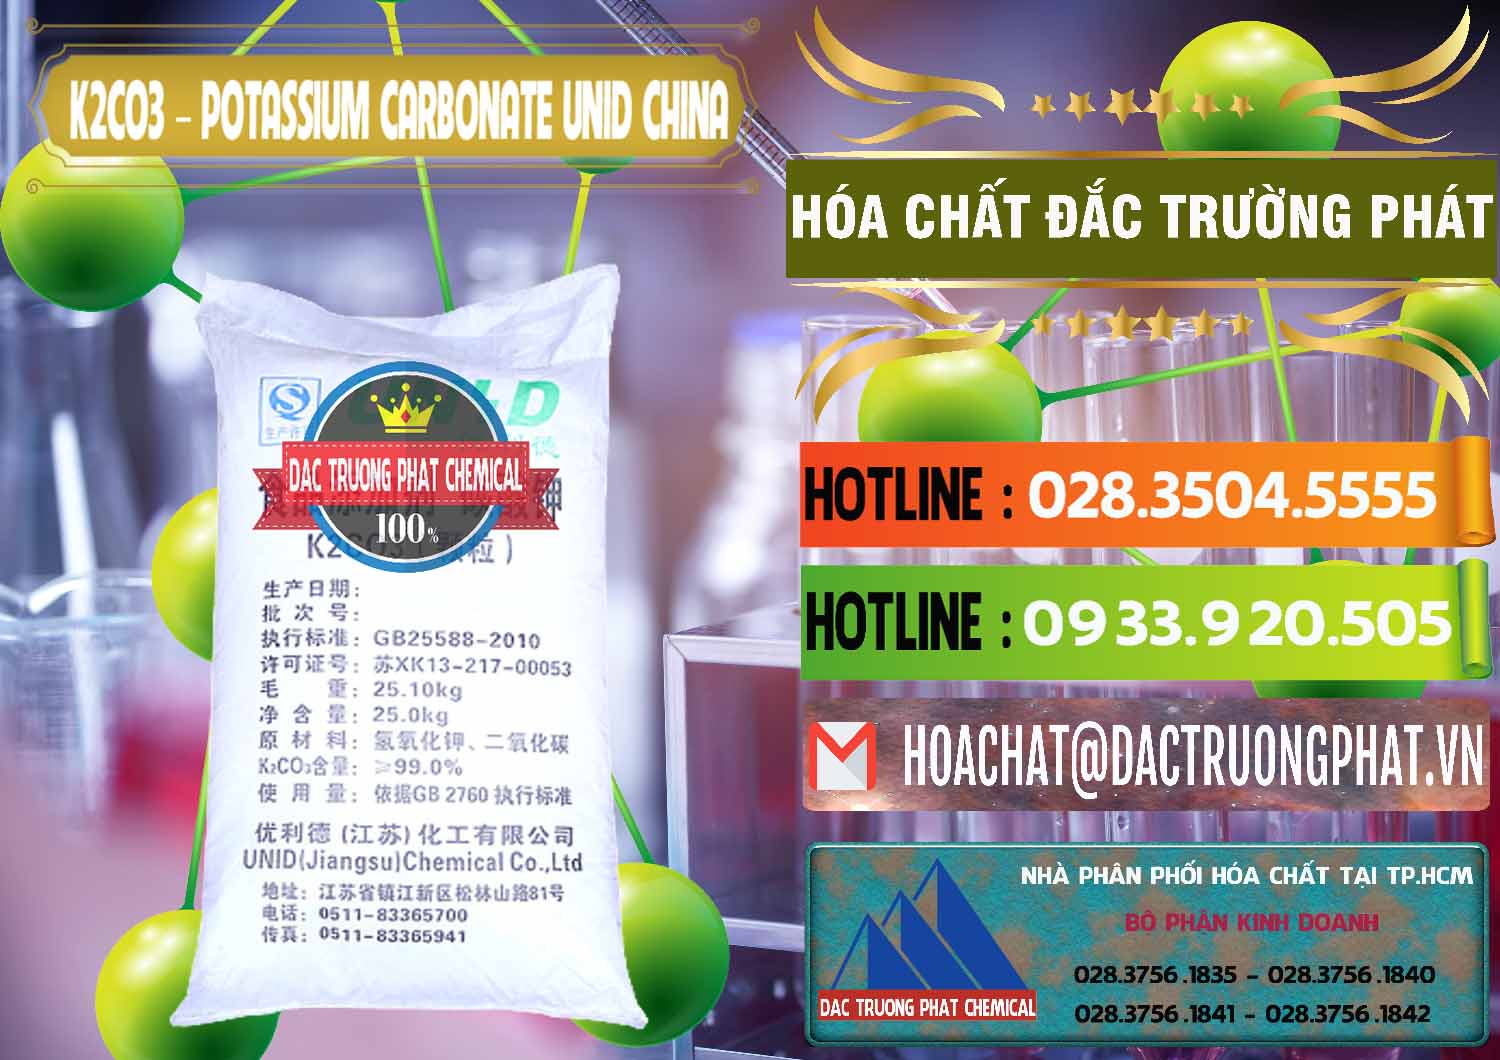 Nơi chuyên bán & cung cấp K2Co3 – Potassium Carbonate UNID Trung Quốc China - 0475 - Cty chuyên kinh doanh - phân phối hóa chất tại TP.HCM - cungcaphoachat.com.vn